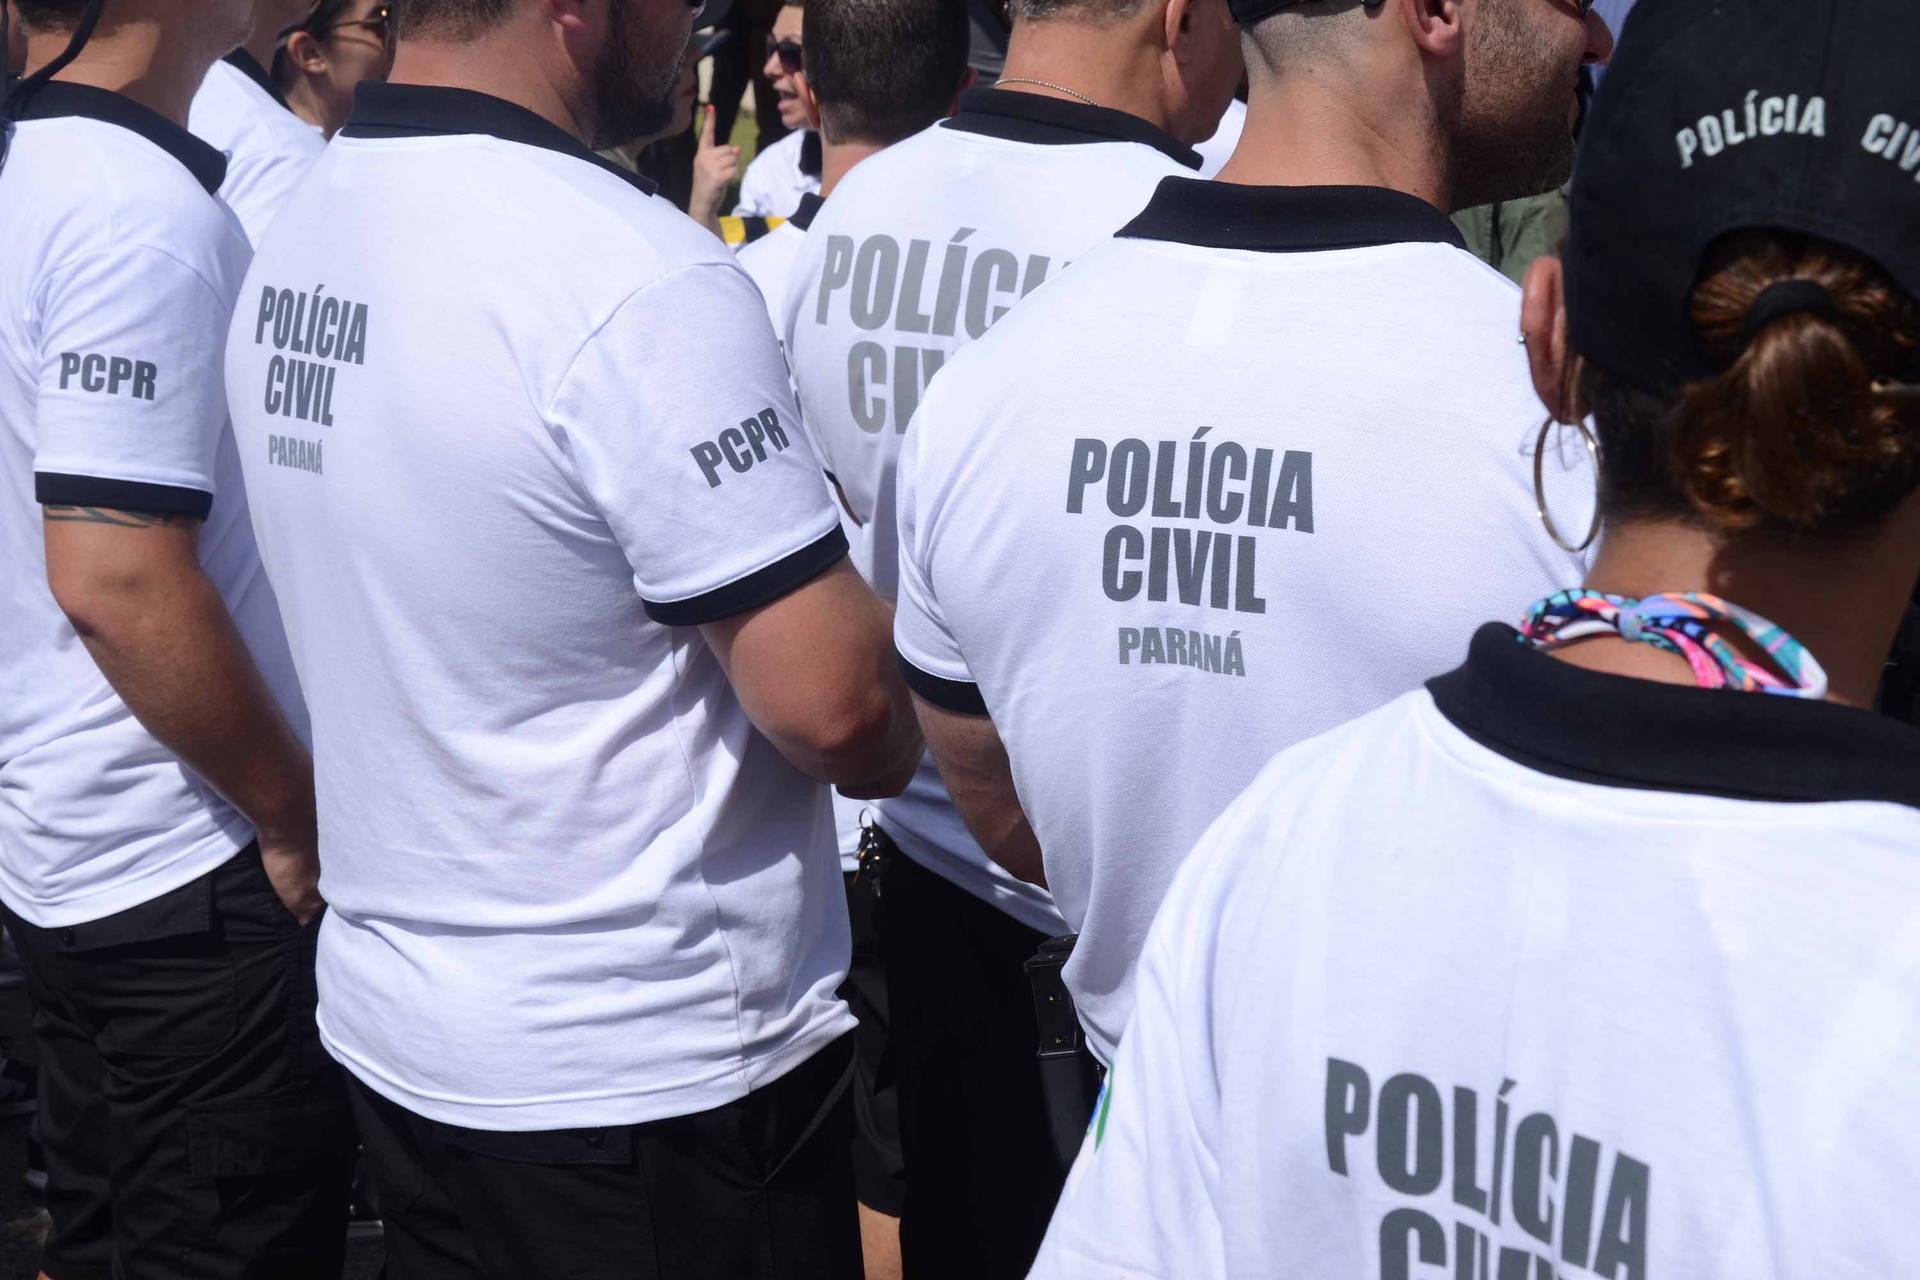  Polícia Civil do Paraná abre concurso público